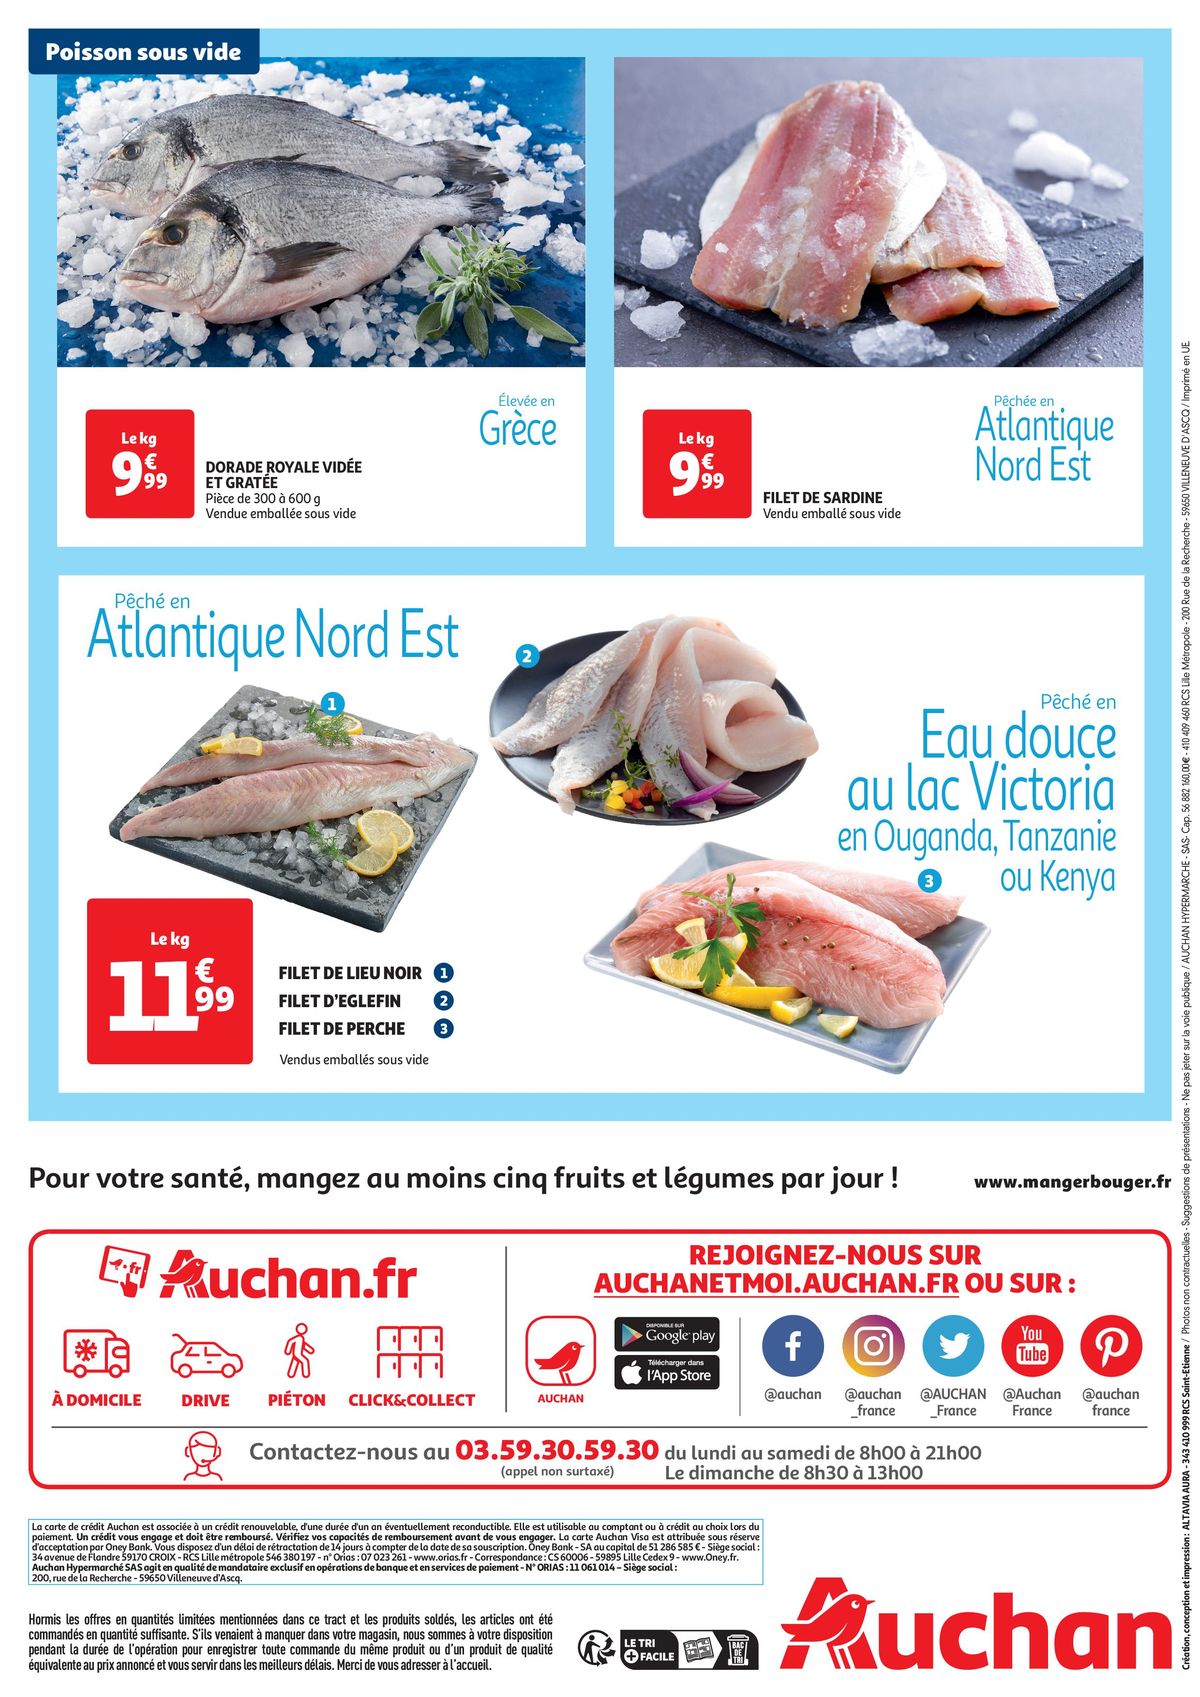 Catalogue Tract spécial poisson sous vide, page 00002